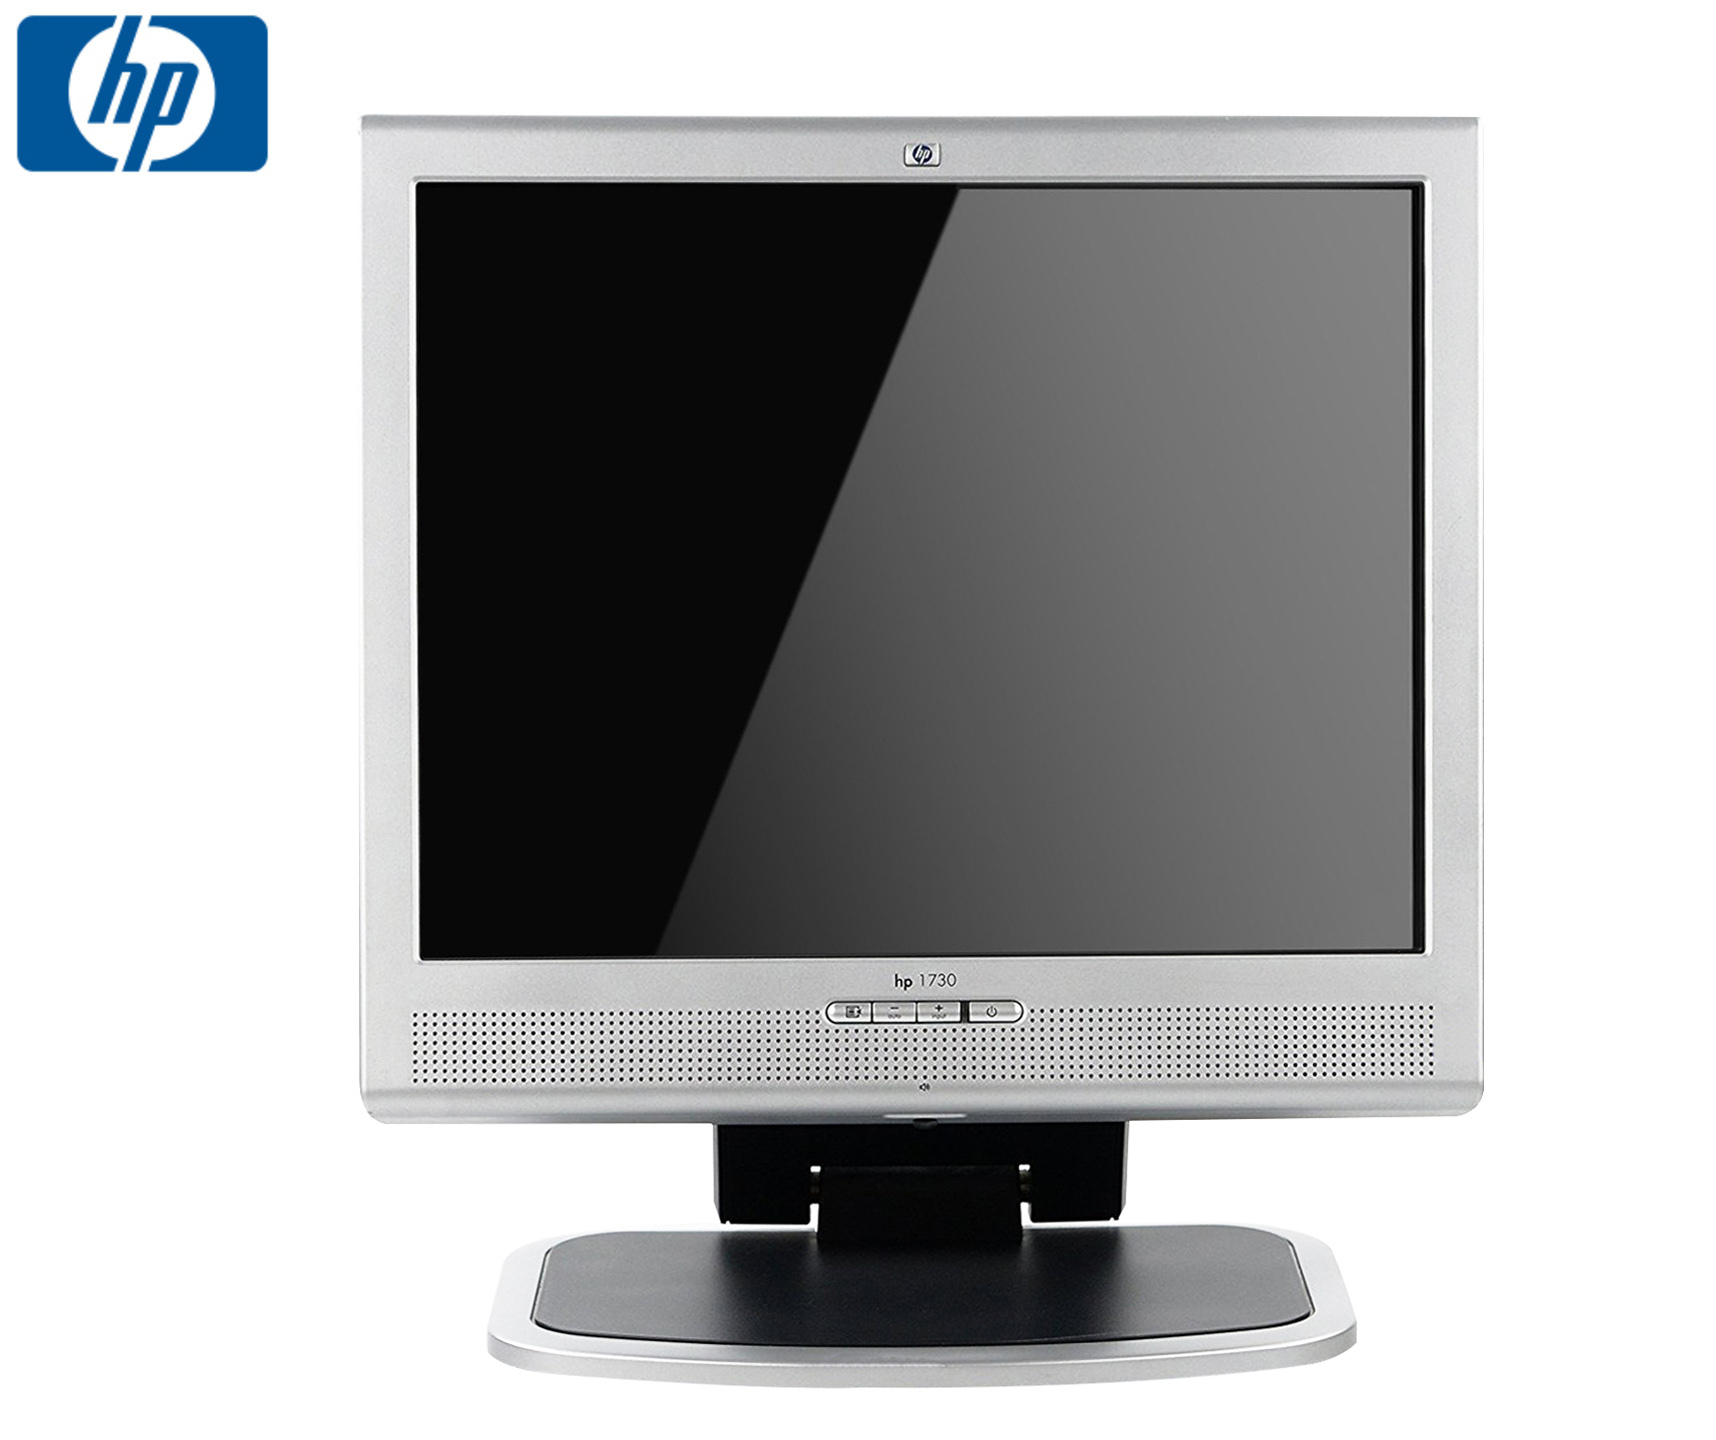 HP 1730 LCD